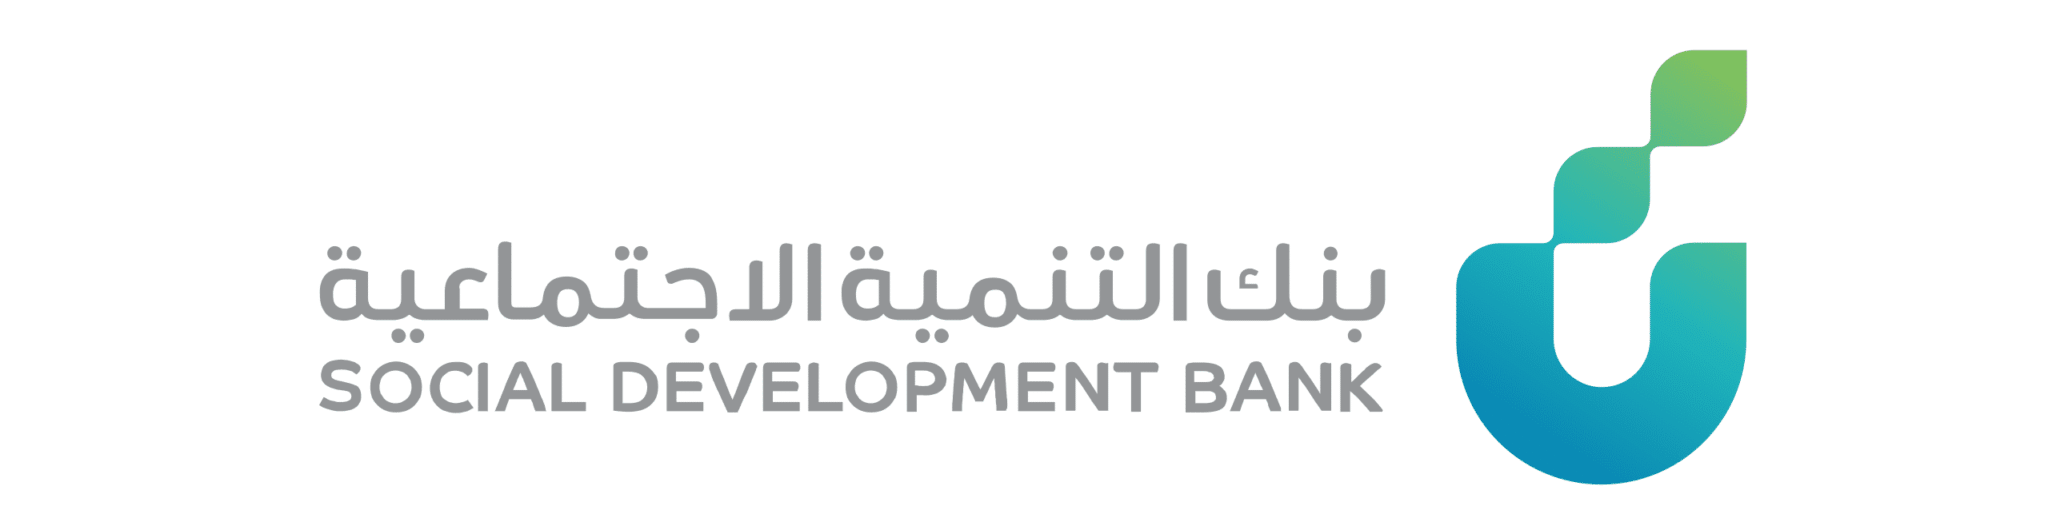 بنك التنمية الاجتماعية يوضح شروط و كيفية الحصول على تمويل نقدي بقيمة 120 الف ريال